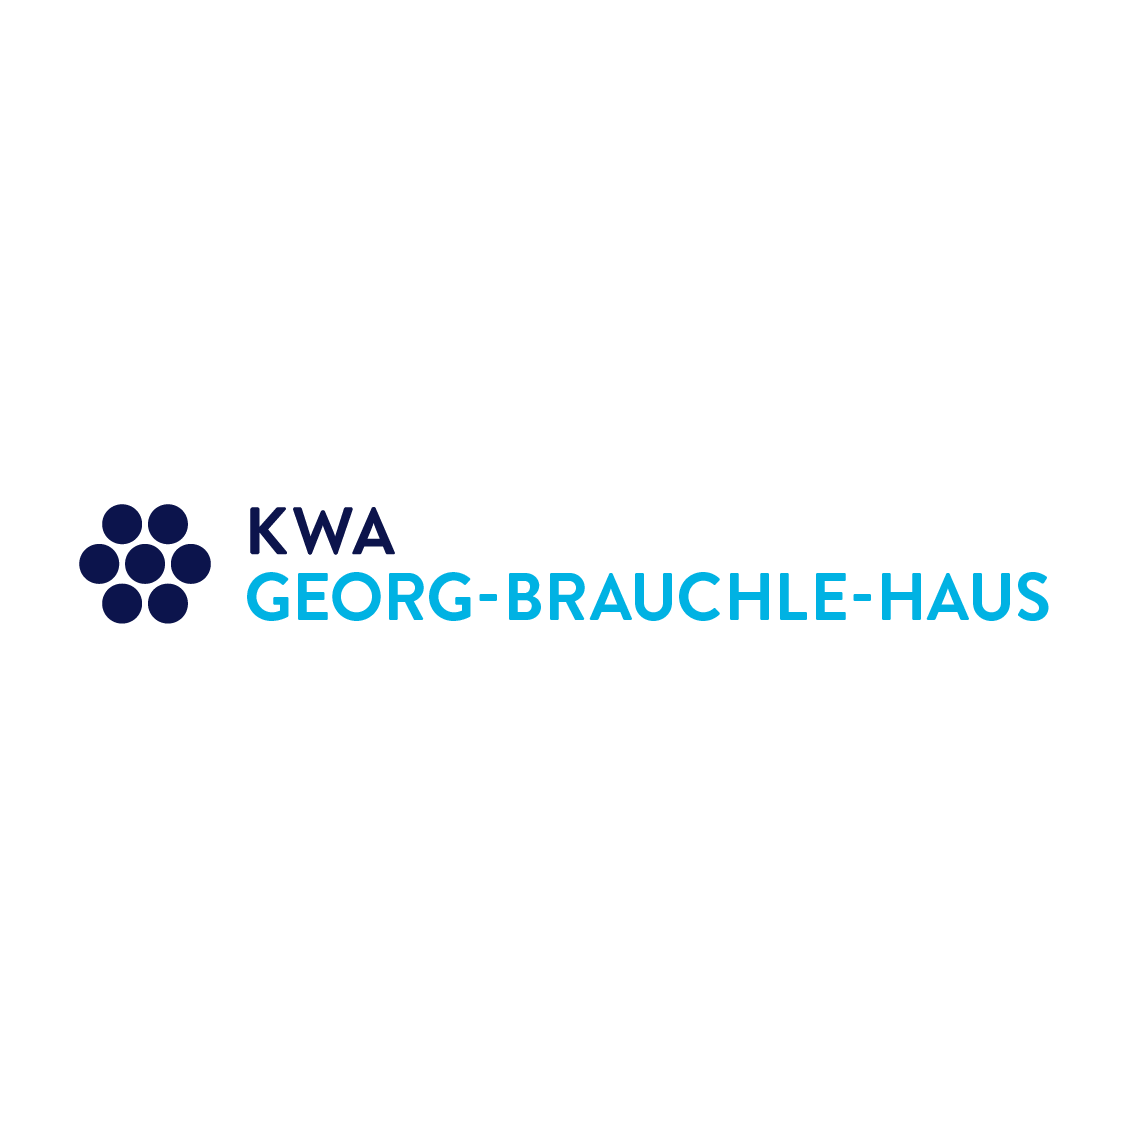 KWA Georg-Brauchle-Haus  